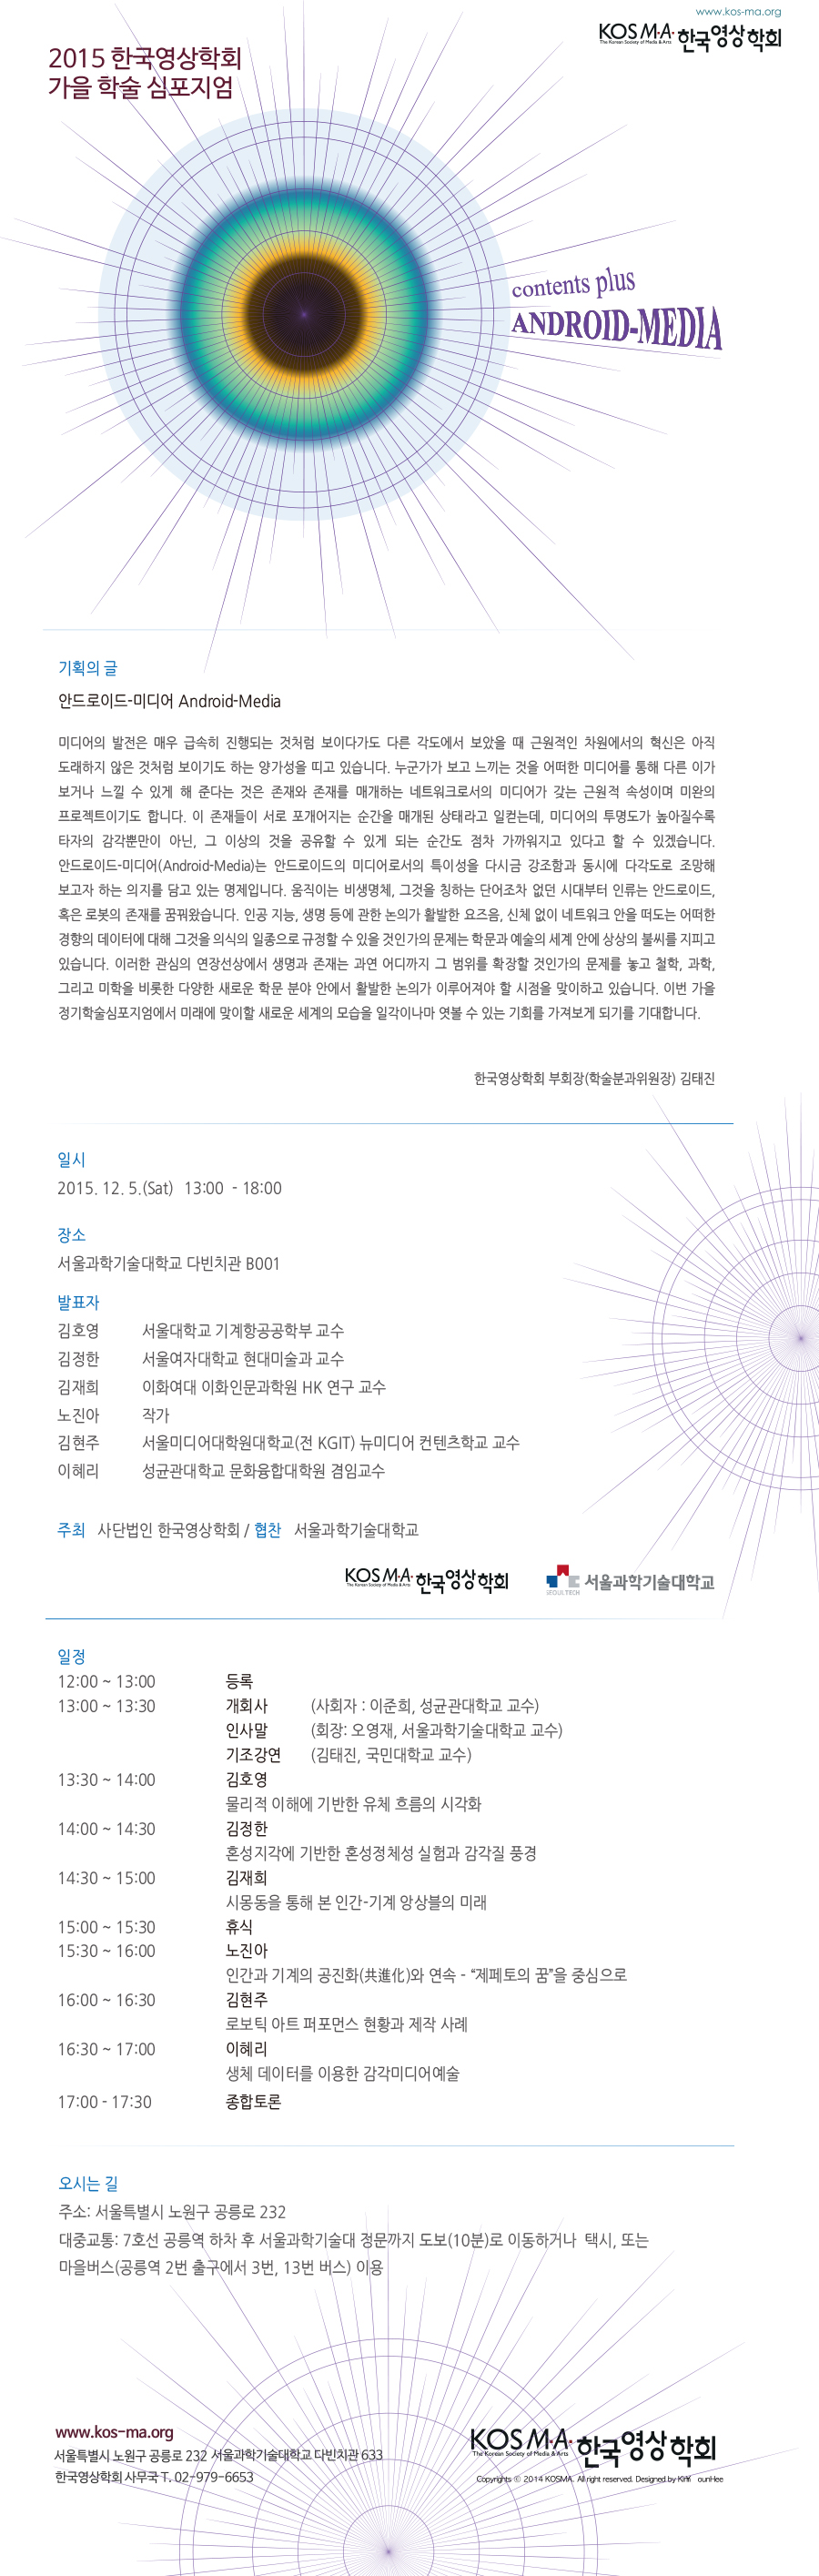 2015 한국영상학회 가을 정기학술심포지엄「Android-Media」